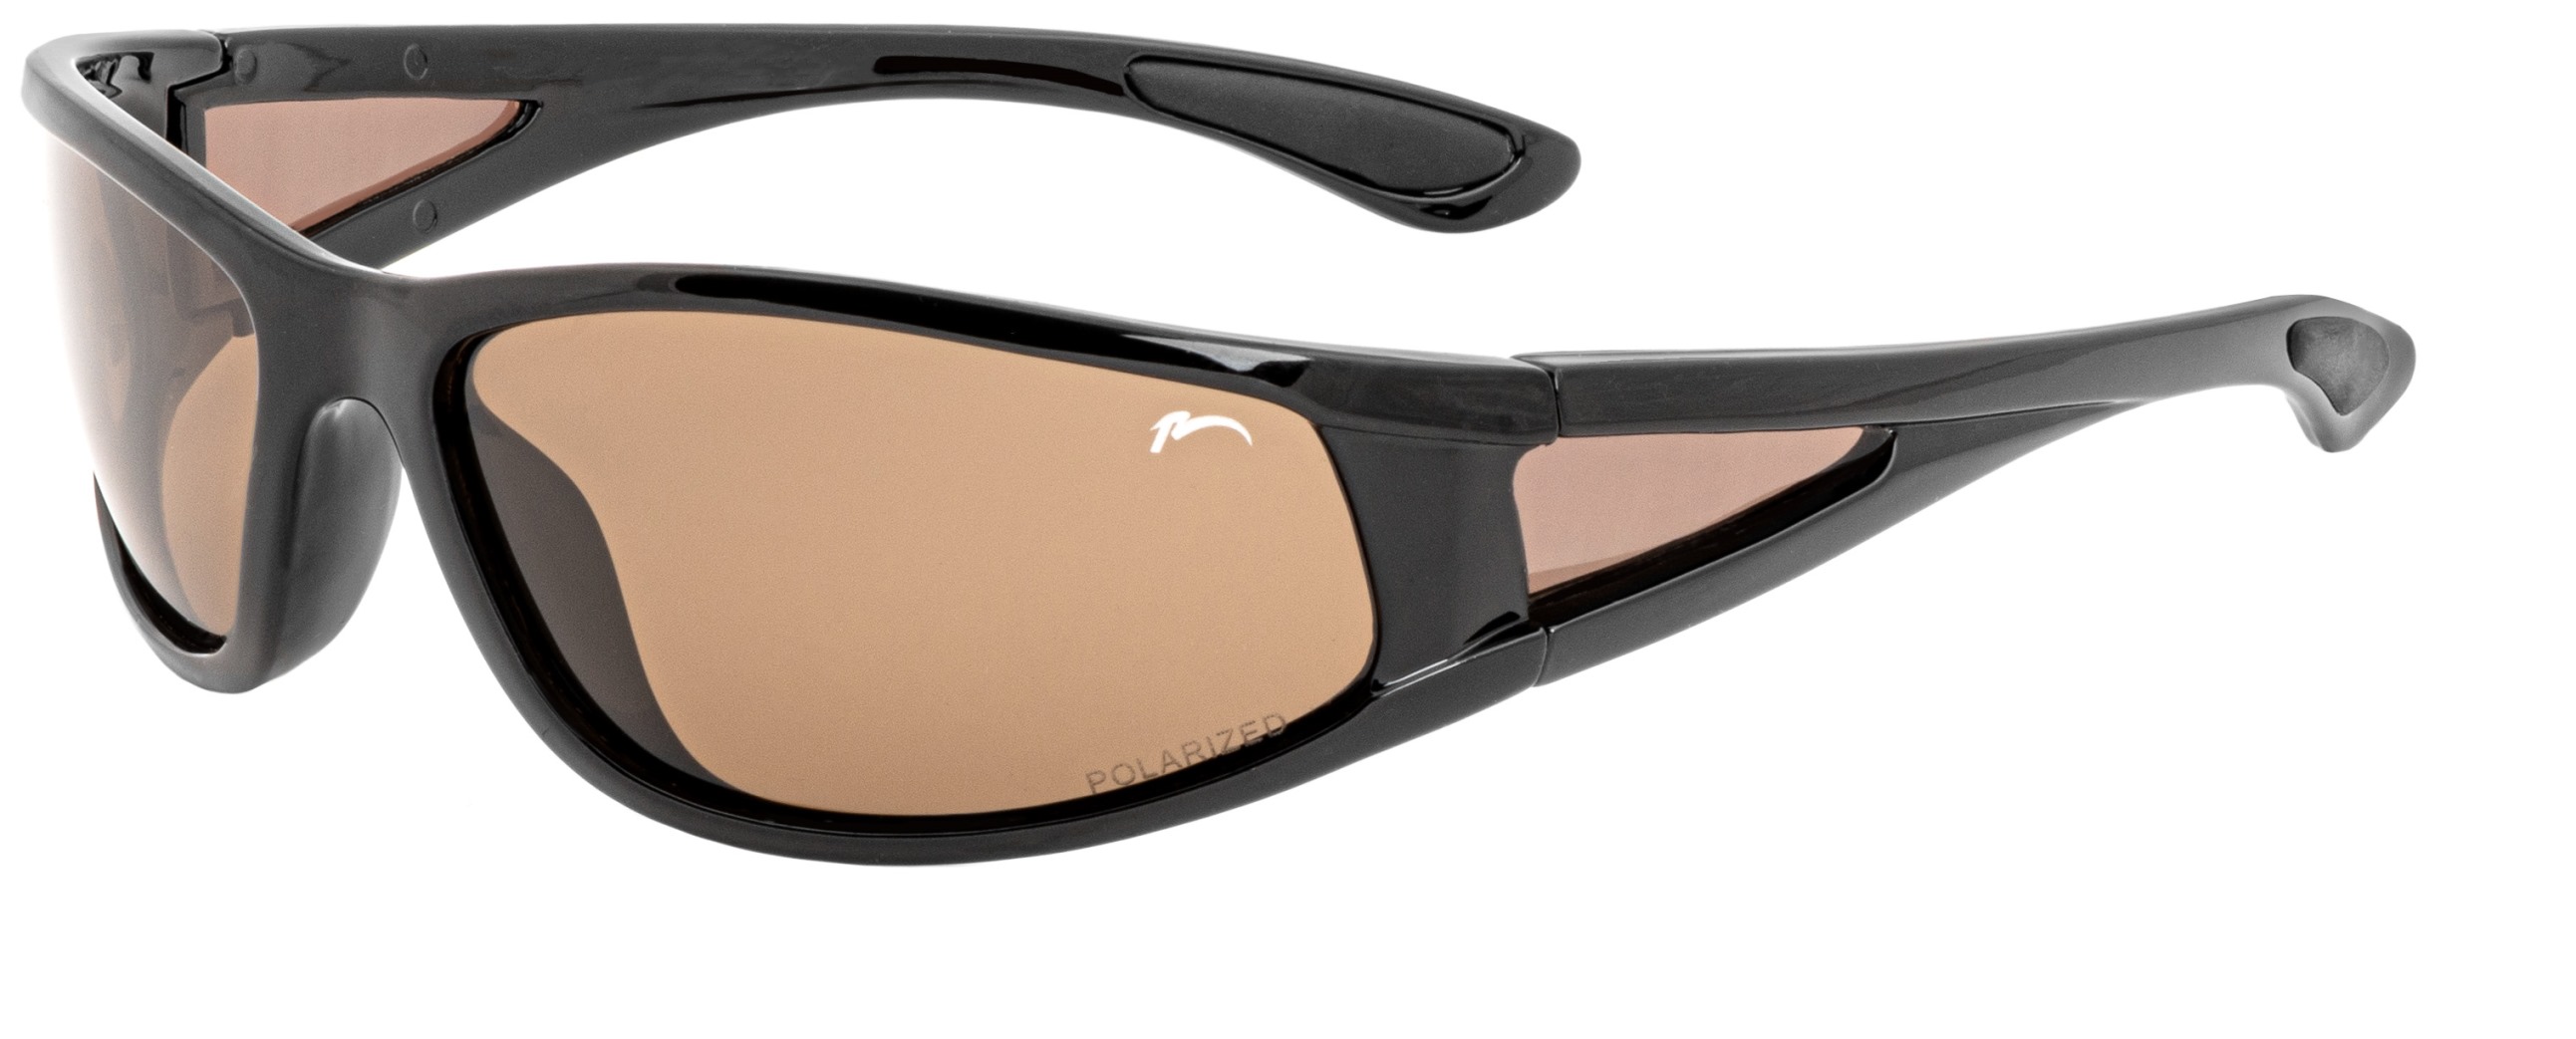 Polarized sportovní sunglasses  Mindano Relax R5252I standard